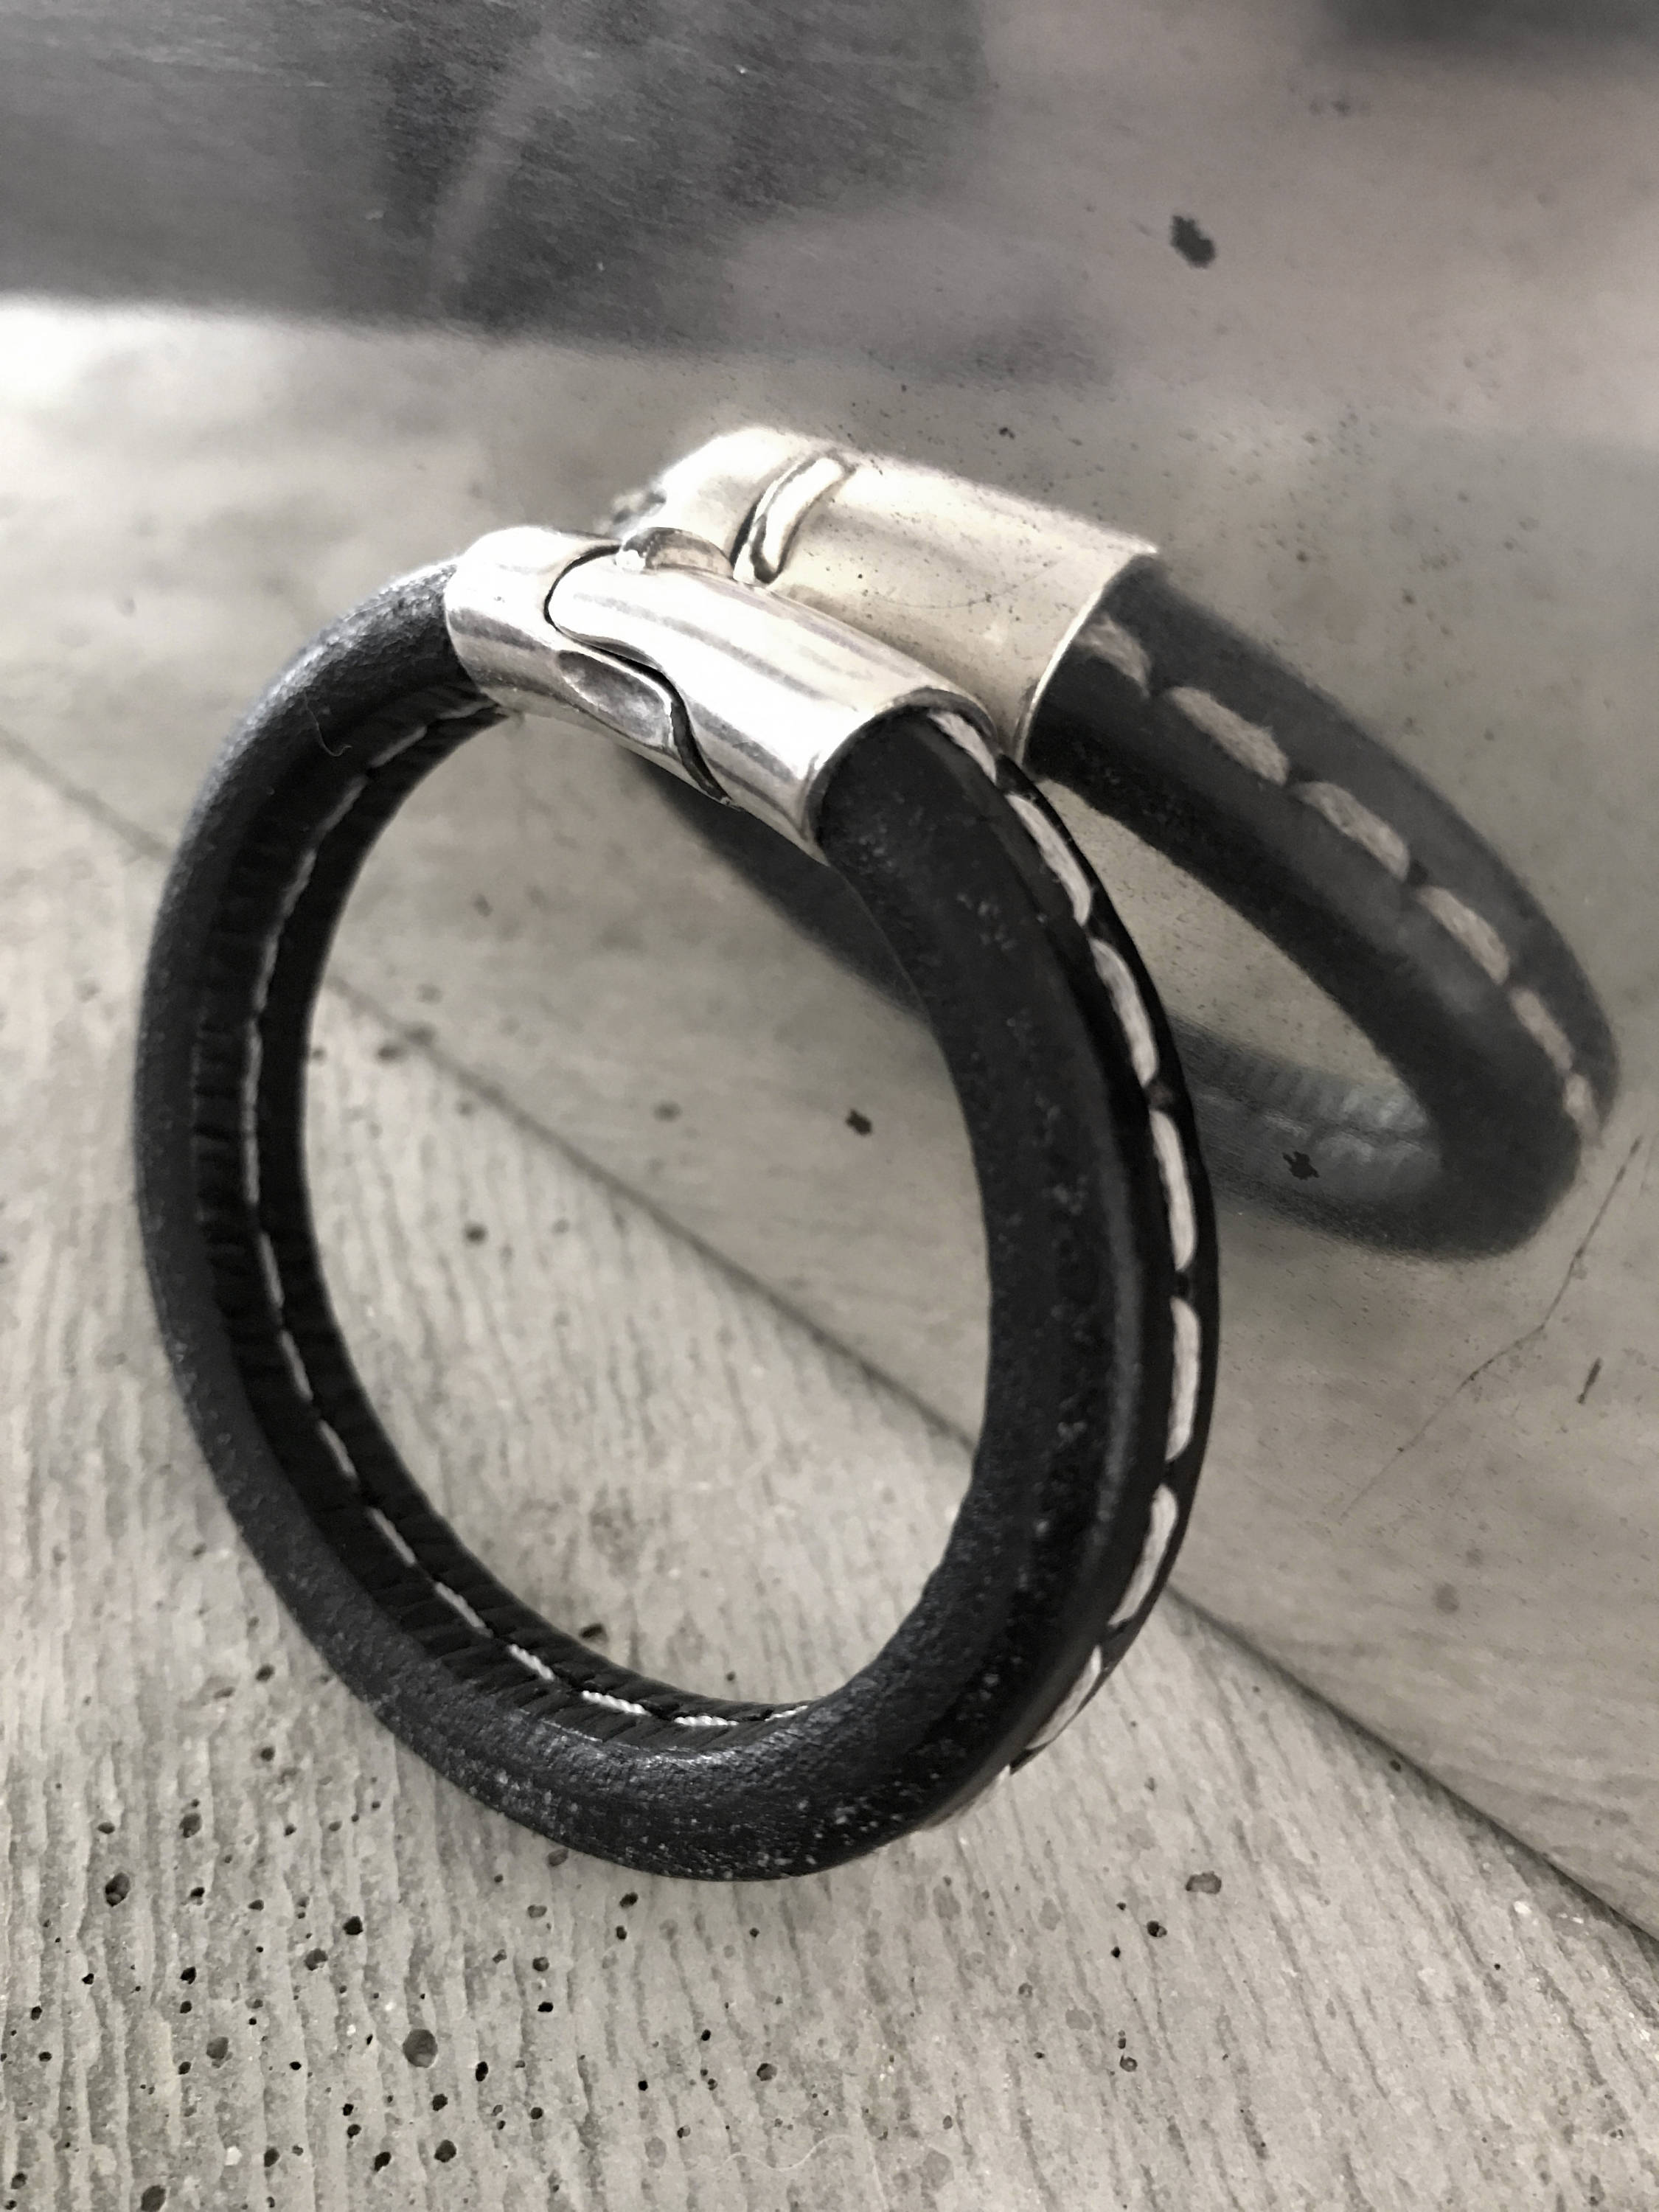 Black Leather Bracelet with White Stitching - Unisex